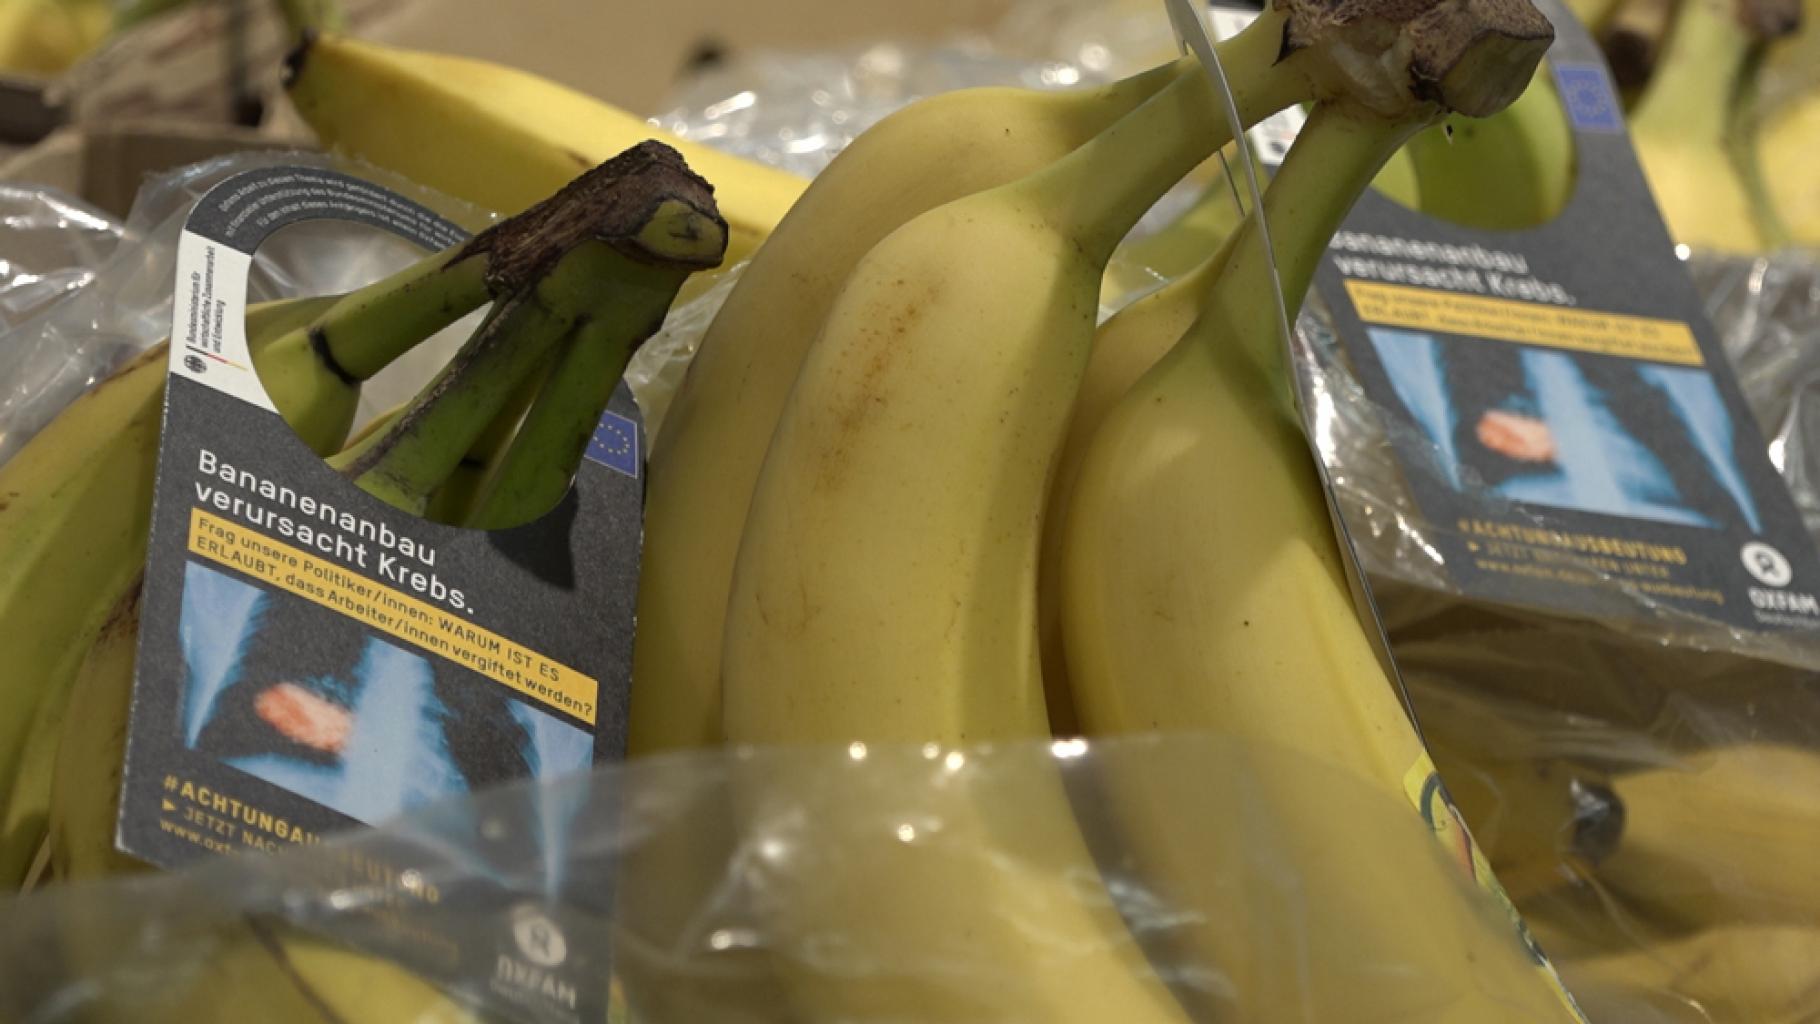 Bananen mit Schockbild-Anhängern im Stil der Warnhinweise auf Zigarettenpackungen: „Bananenanbau verursacht Krebs.“